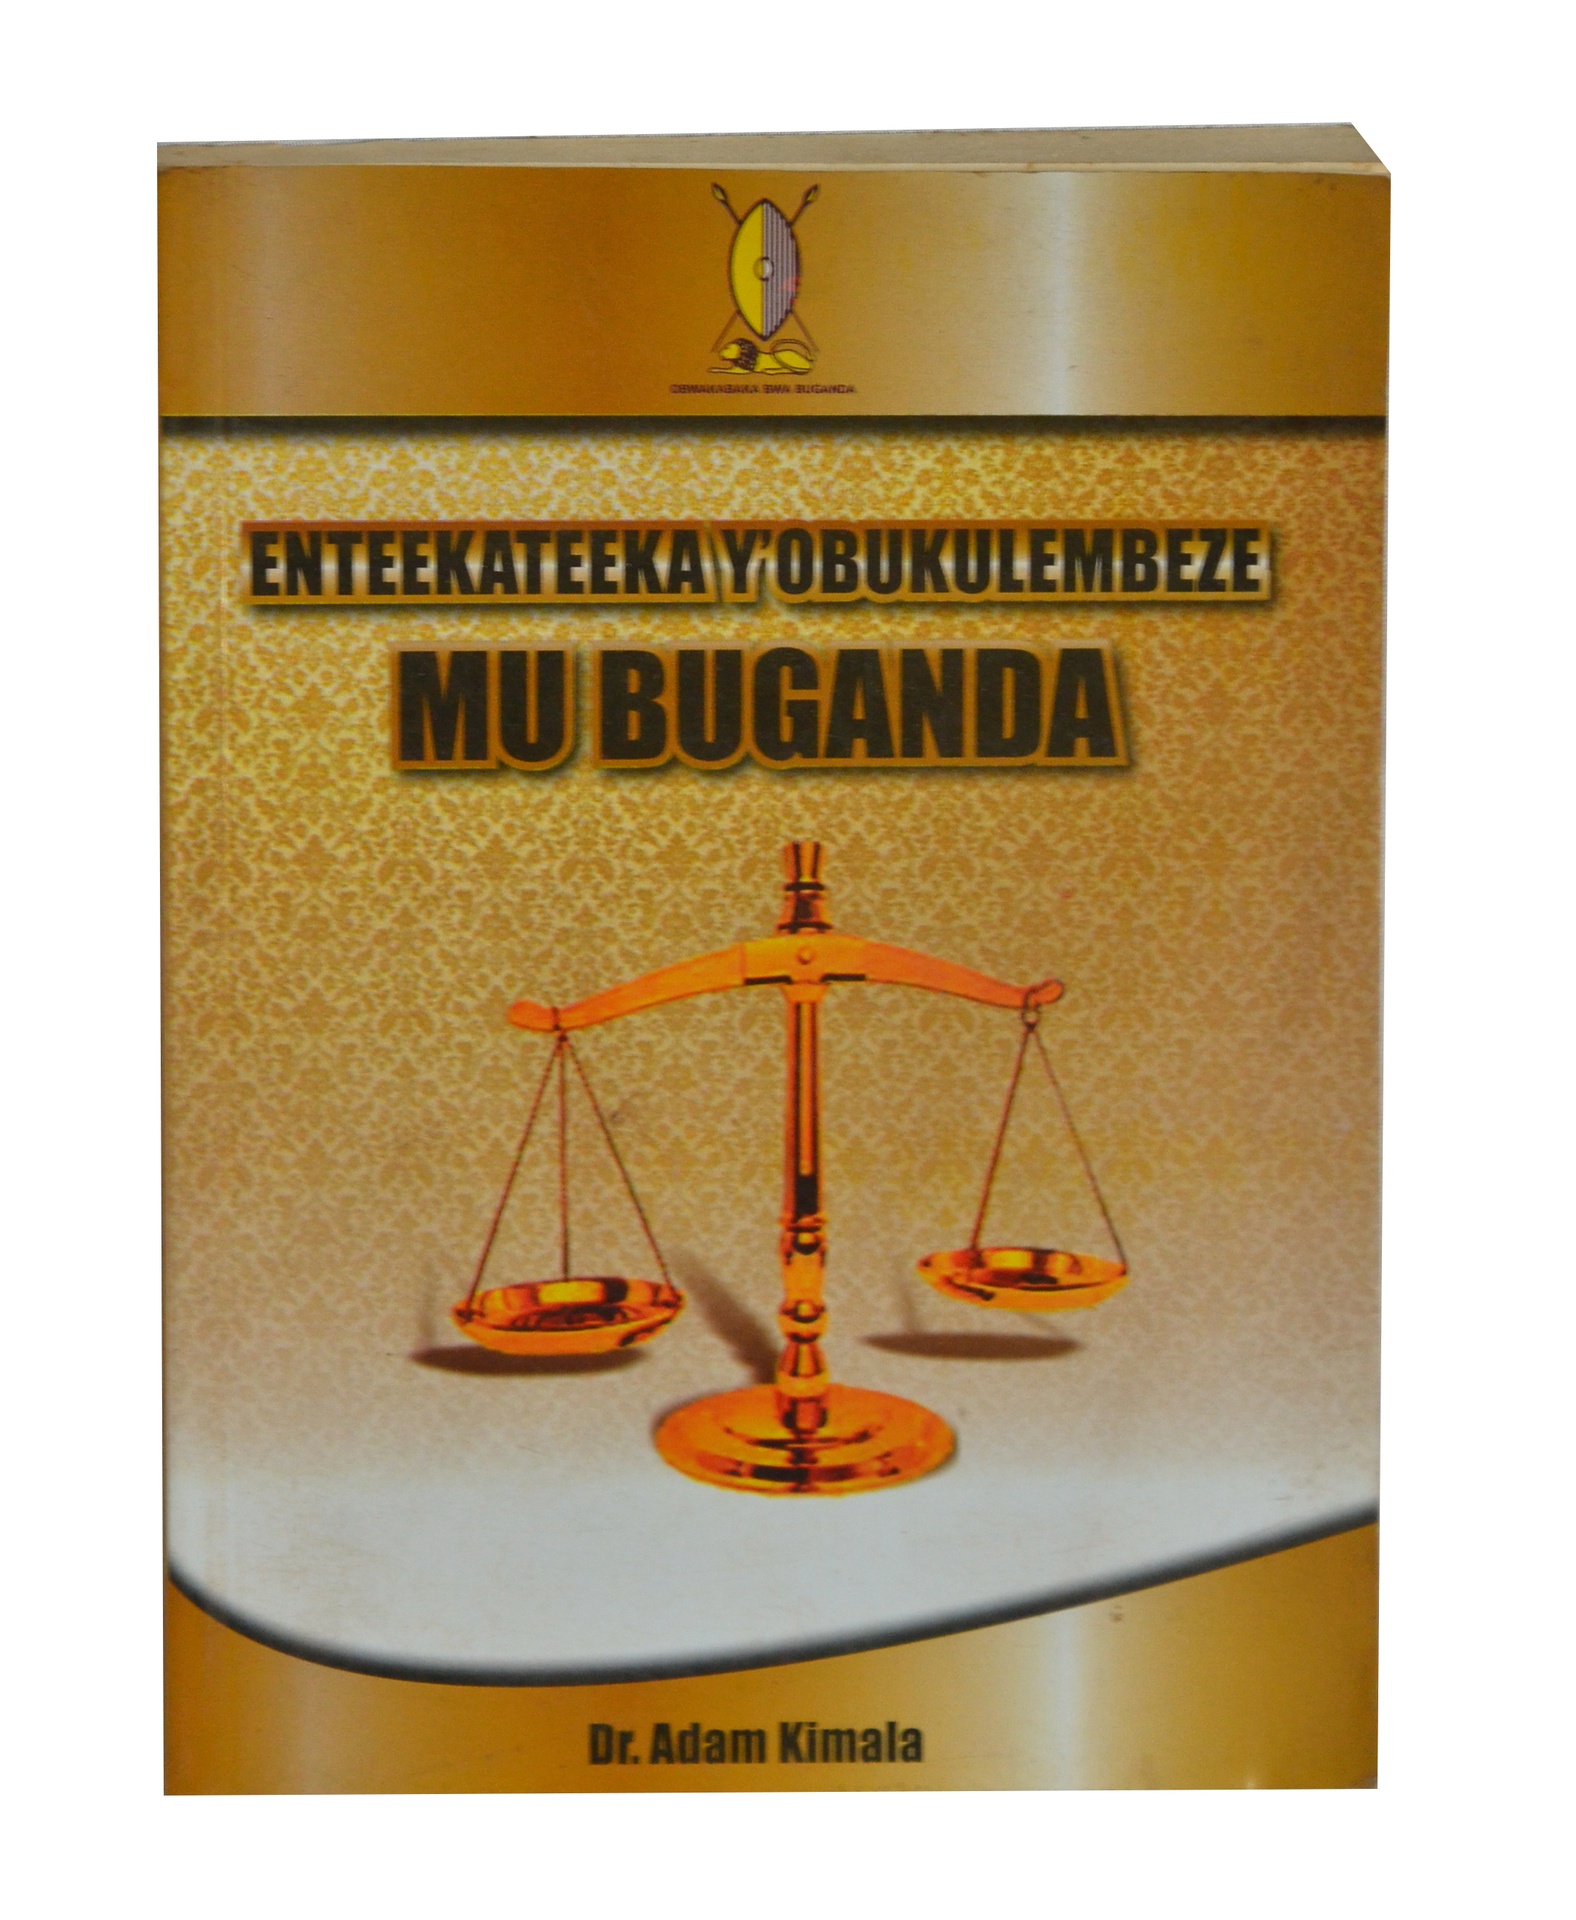 Entekateeka Y’obukulembeze Mu Buganda